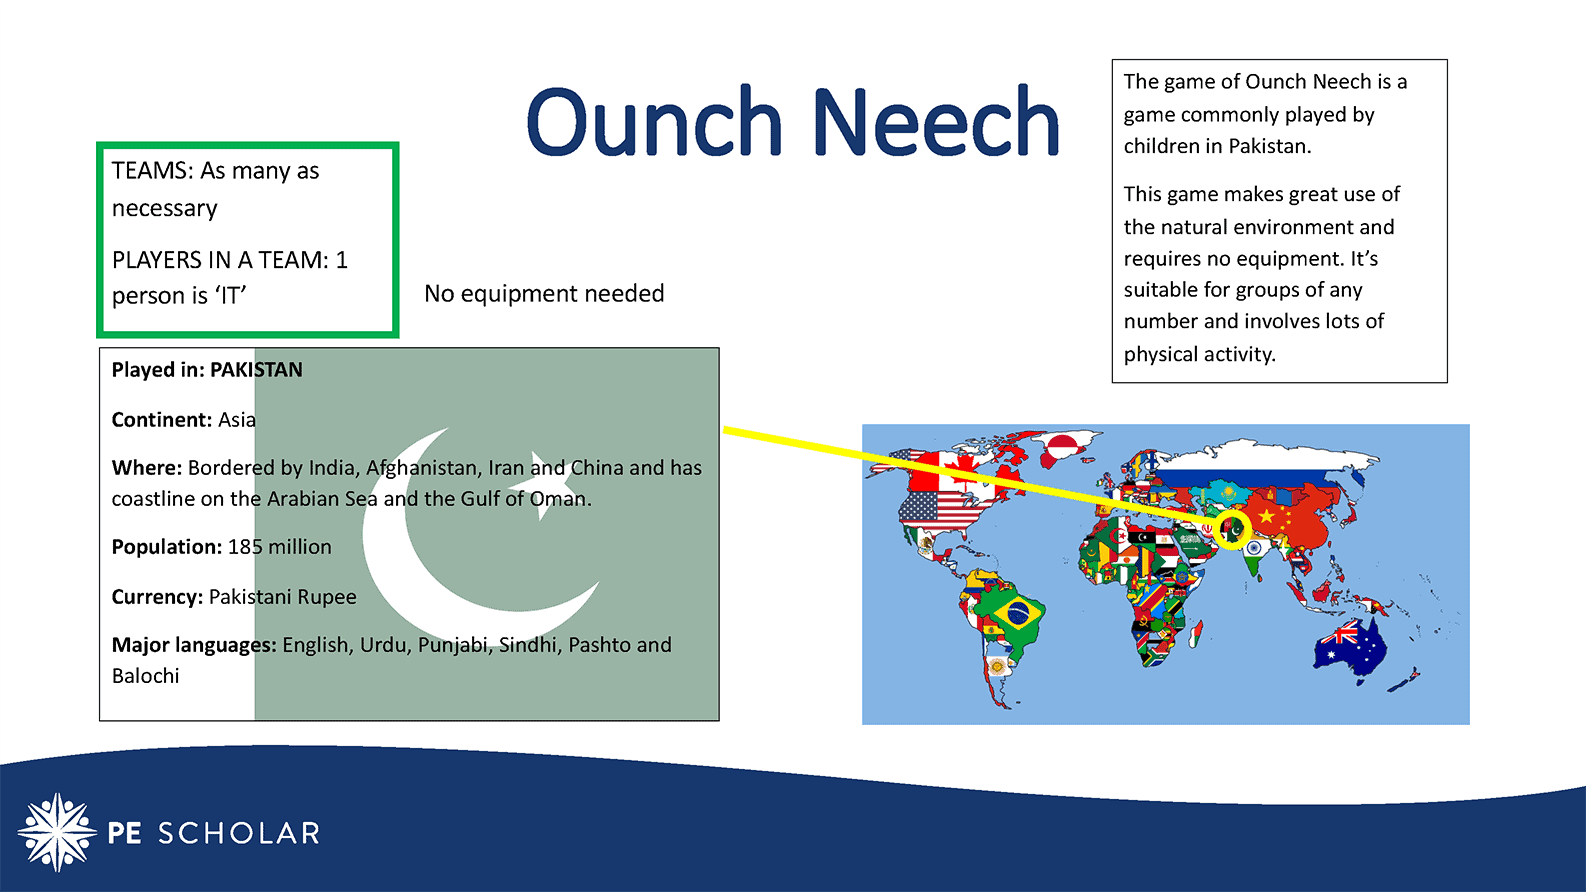 International Games: Ounch Neech (Pakistan)